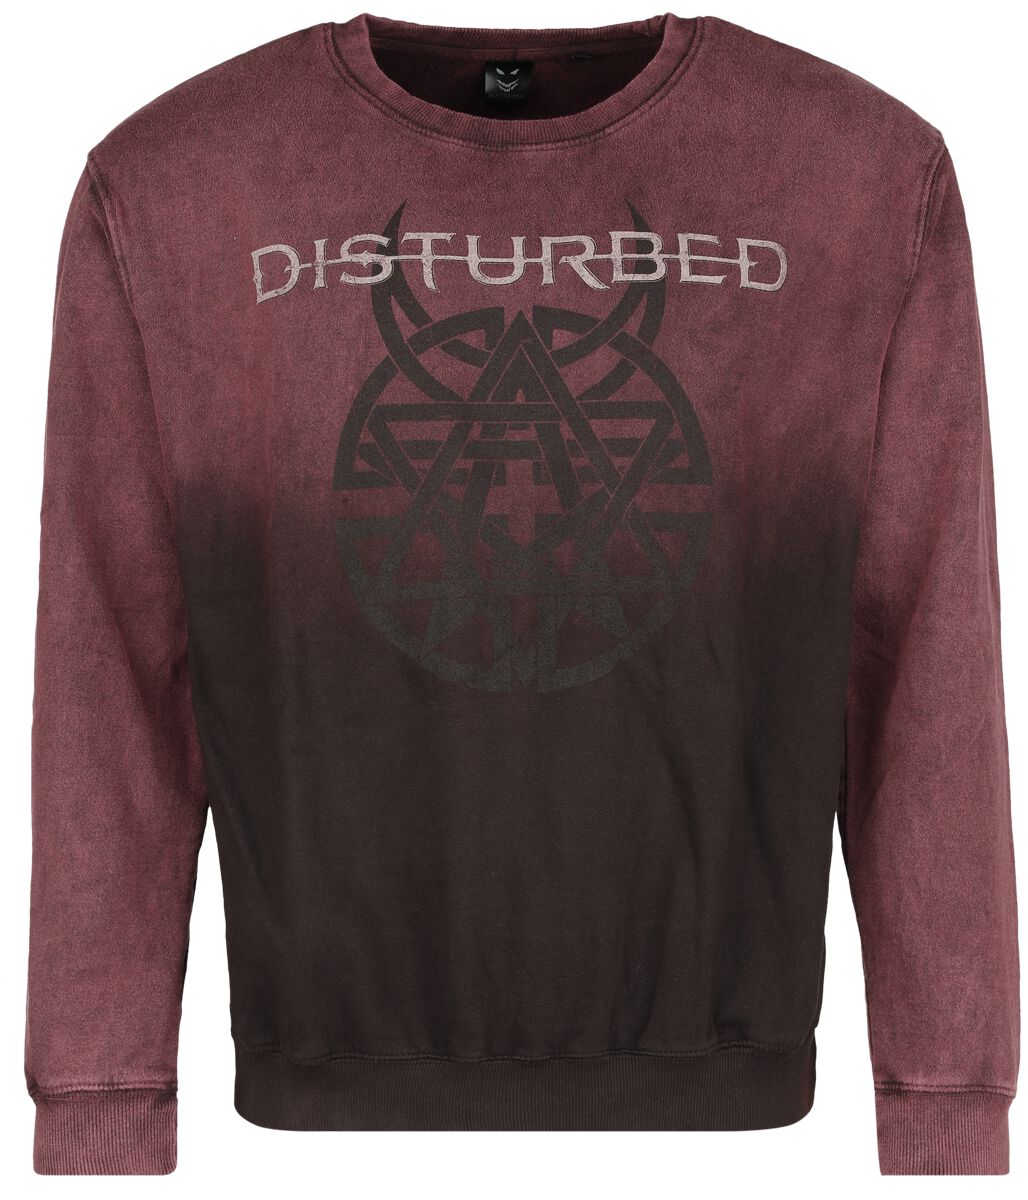 Disturbed Believe Symbol Sweatshirt dunkelrot in S